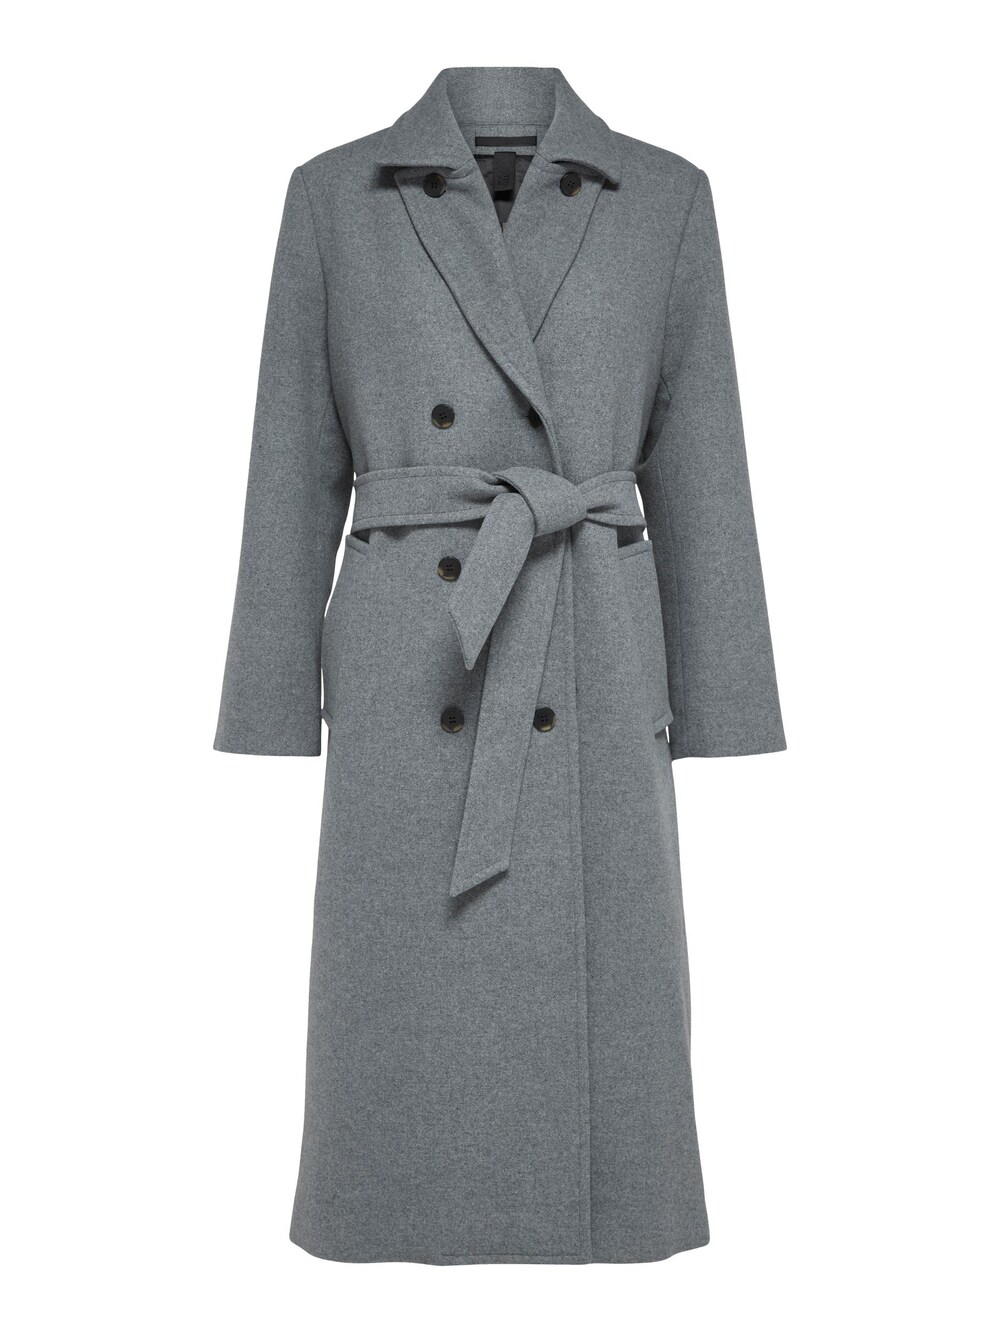 Межсезонное пальто Selected Milo, пестрый серый межсезонное пальто edited tosca пестрый серый